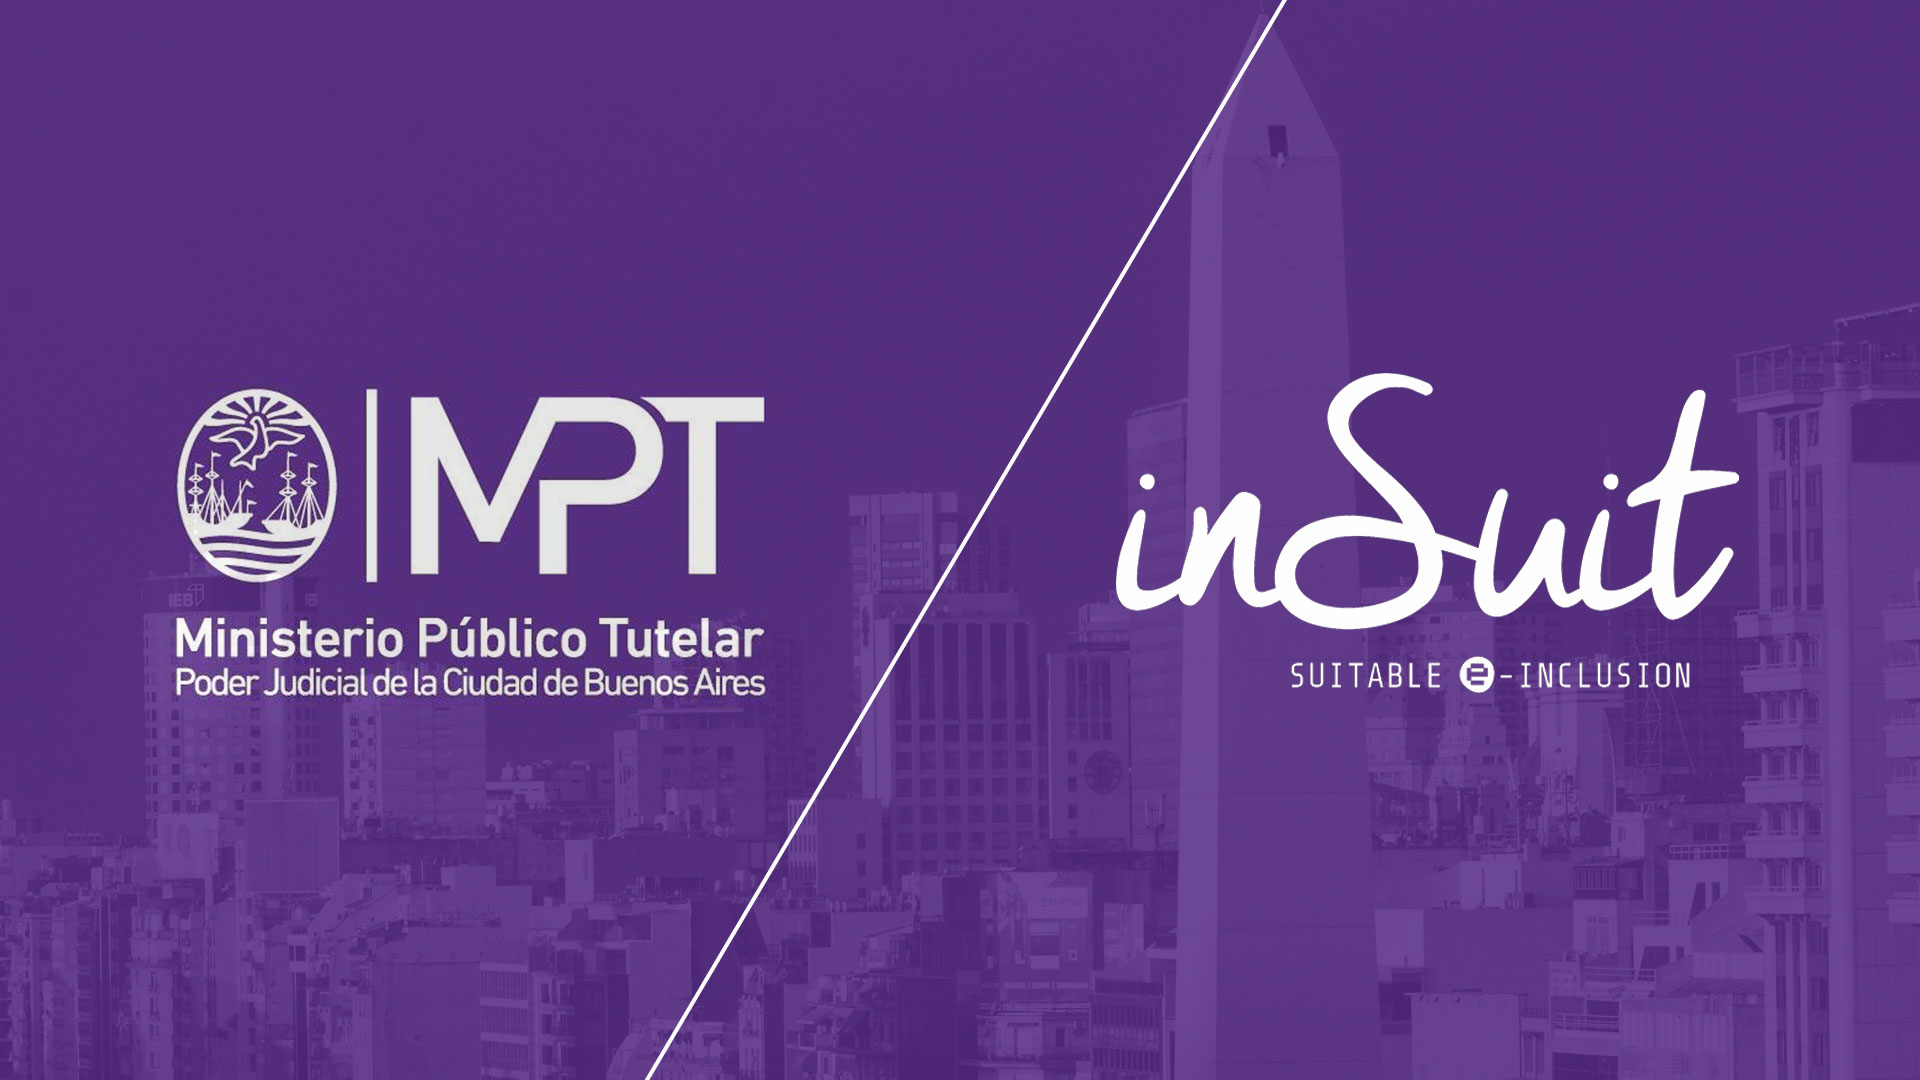 En la imagen se representa la alianza comercial entre el Ministerio Público Tutelar de la Ciudad de Buenos Aires y de inSuit sobre un fondo color morado con una foto de la capital argentina en opacidad.